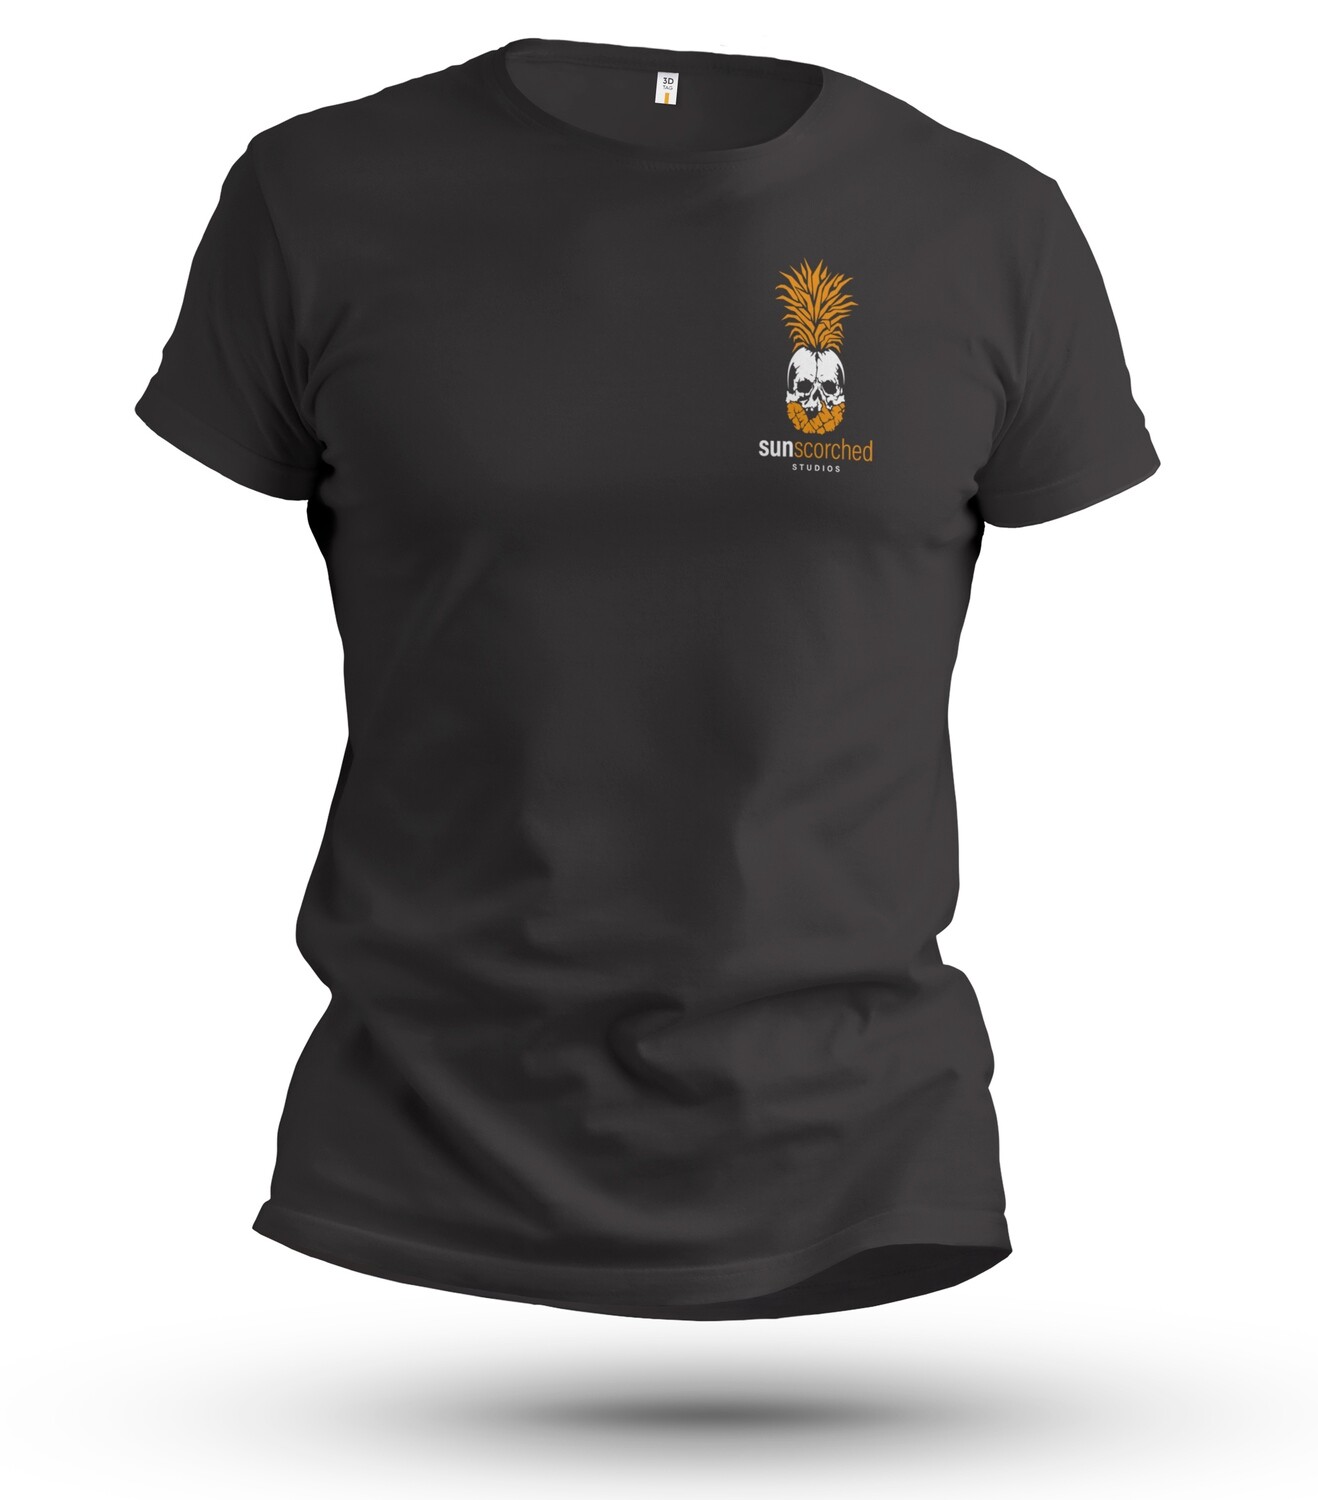 Unisex Black Sunscorched Studios T-shirt